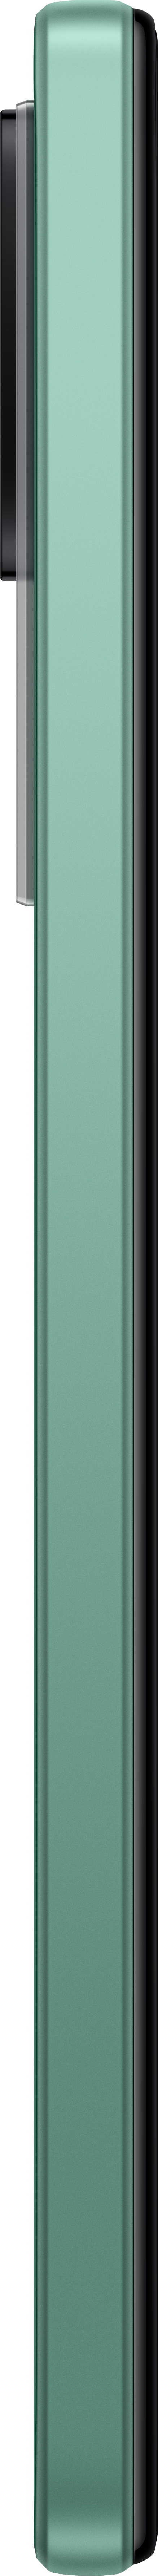 SIM Green 256 Nebula F4 GB XIAOMI Dual